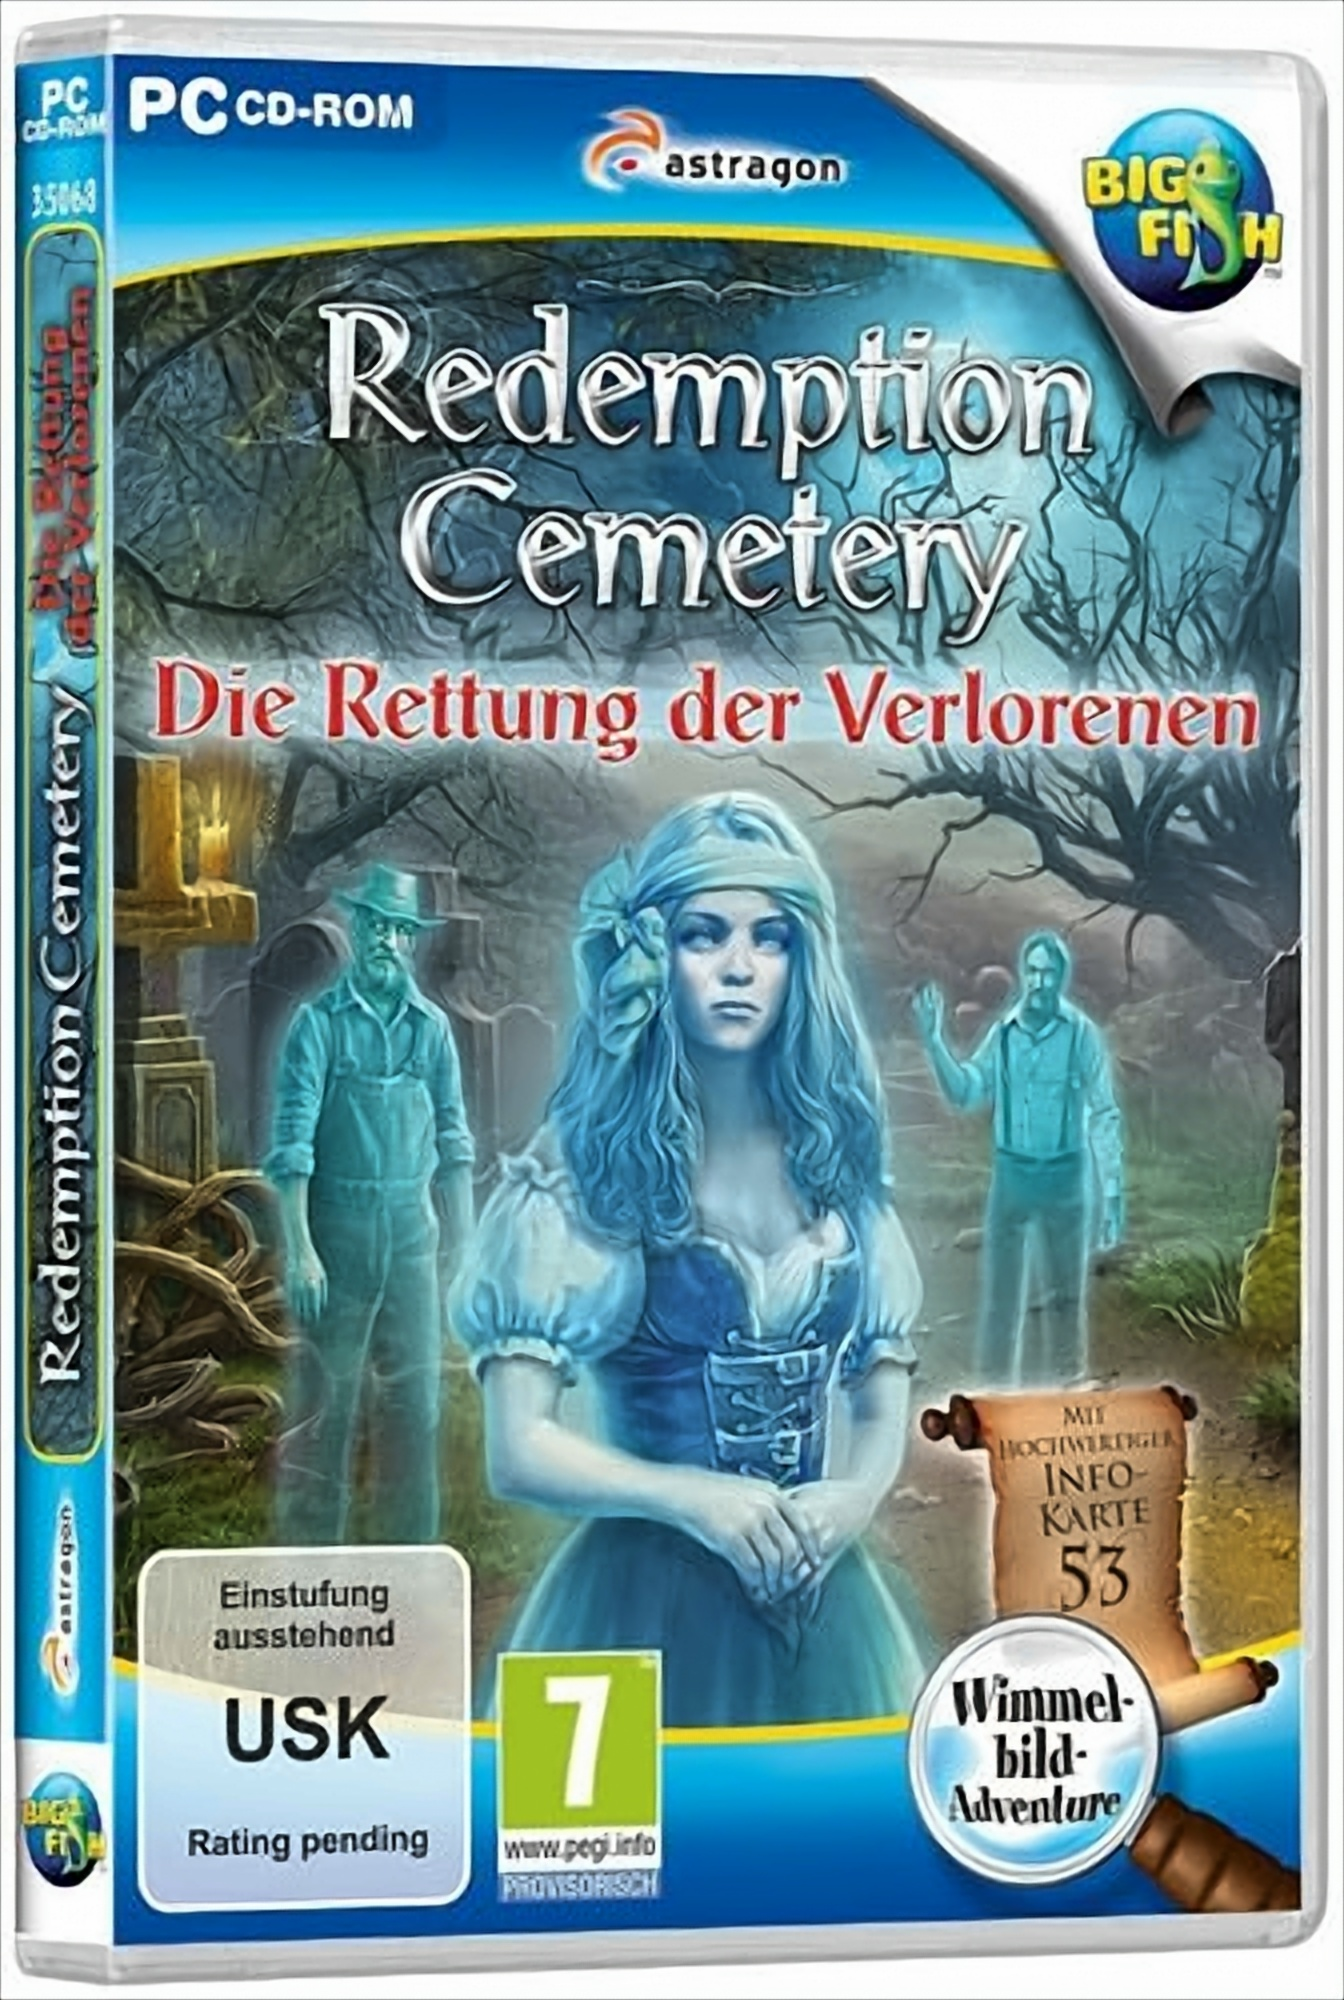 Redemption Cemetery: Die Rettung [PC] Verlorenen - der